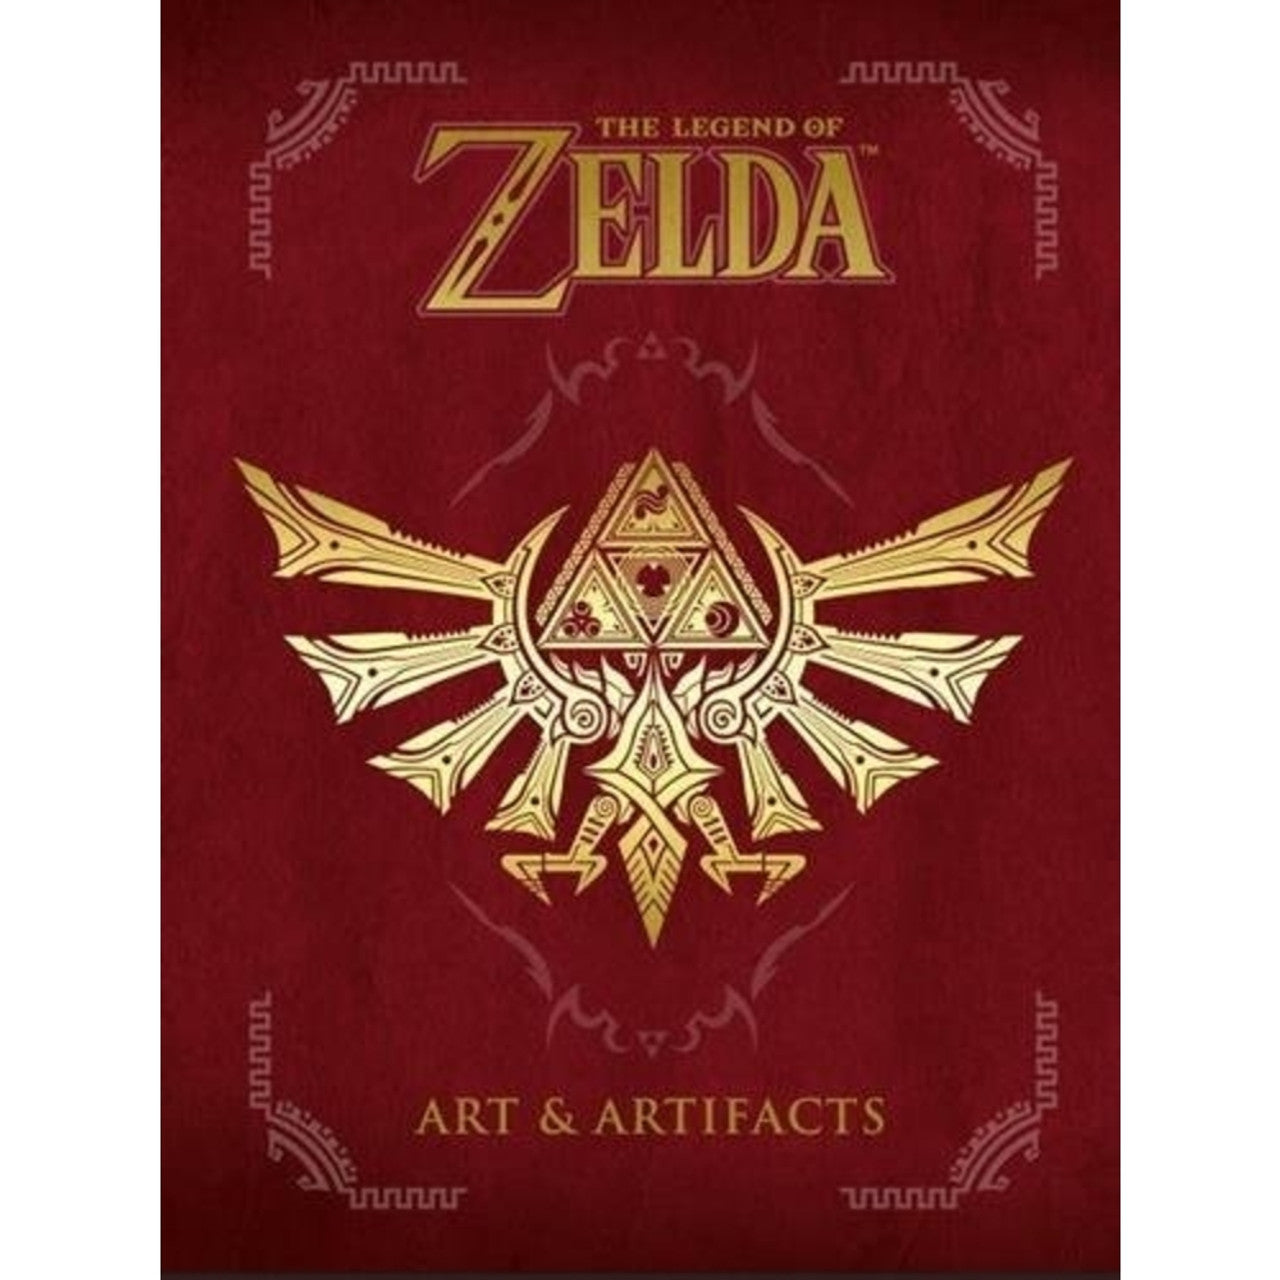 Dark Horse Comics - Legend of Zelda: Art & Artifacts - Hardcover